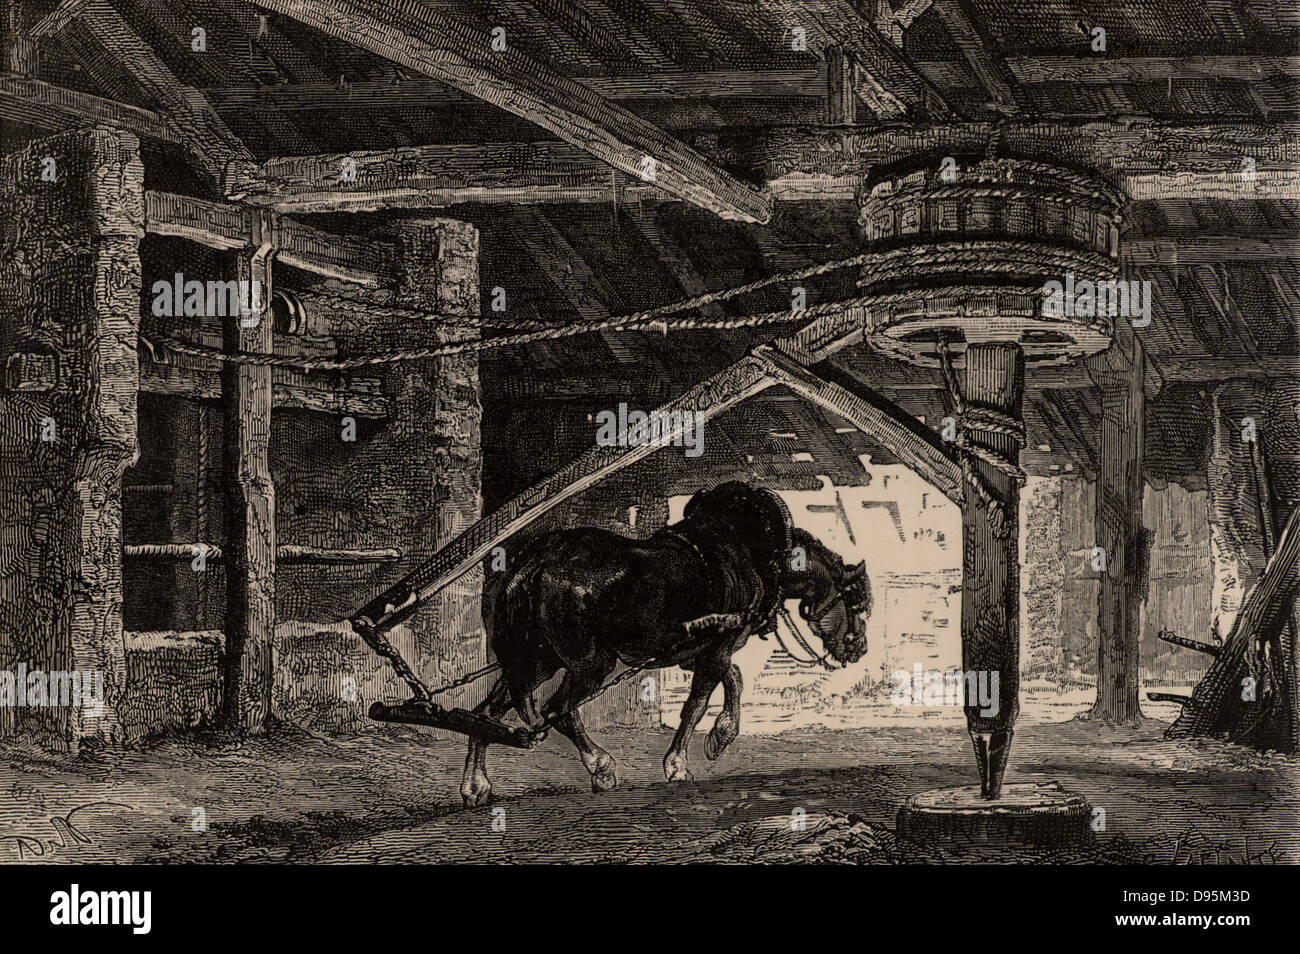 Un cavallo-capriccio del cavallo-gin. Un tale dispositivo è stato utilizzato per sollevare il carbone dal fondo di una miniera. Da 'vita metropolitana; o, delle miniere e dei minatori di Louis Simonin (Londra, 1869). Incisione su legno. Foto Stock